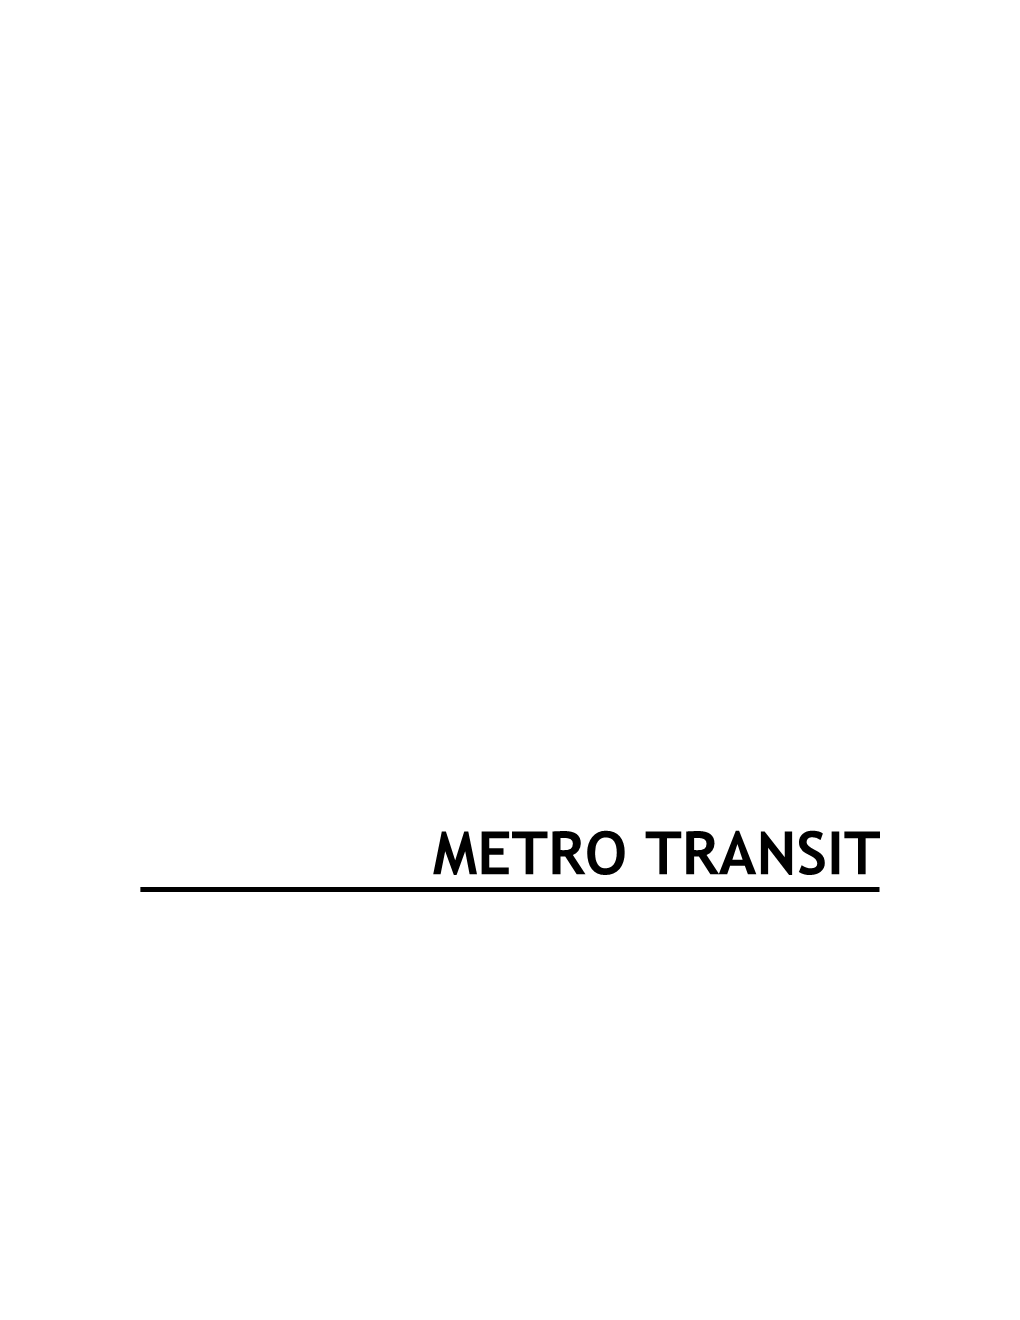 METRO TRANSIT Metro Transit $2.1 Billion